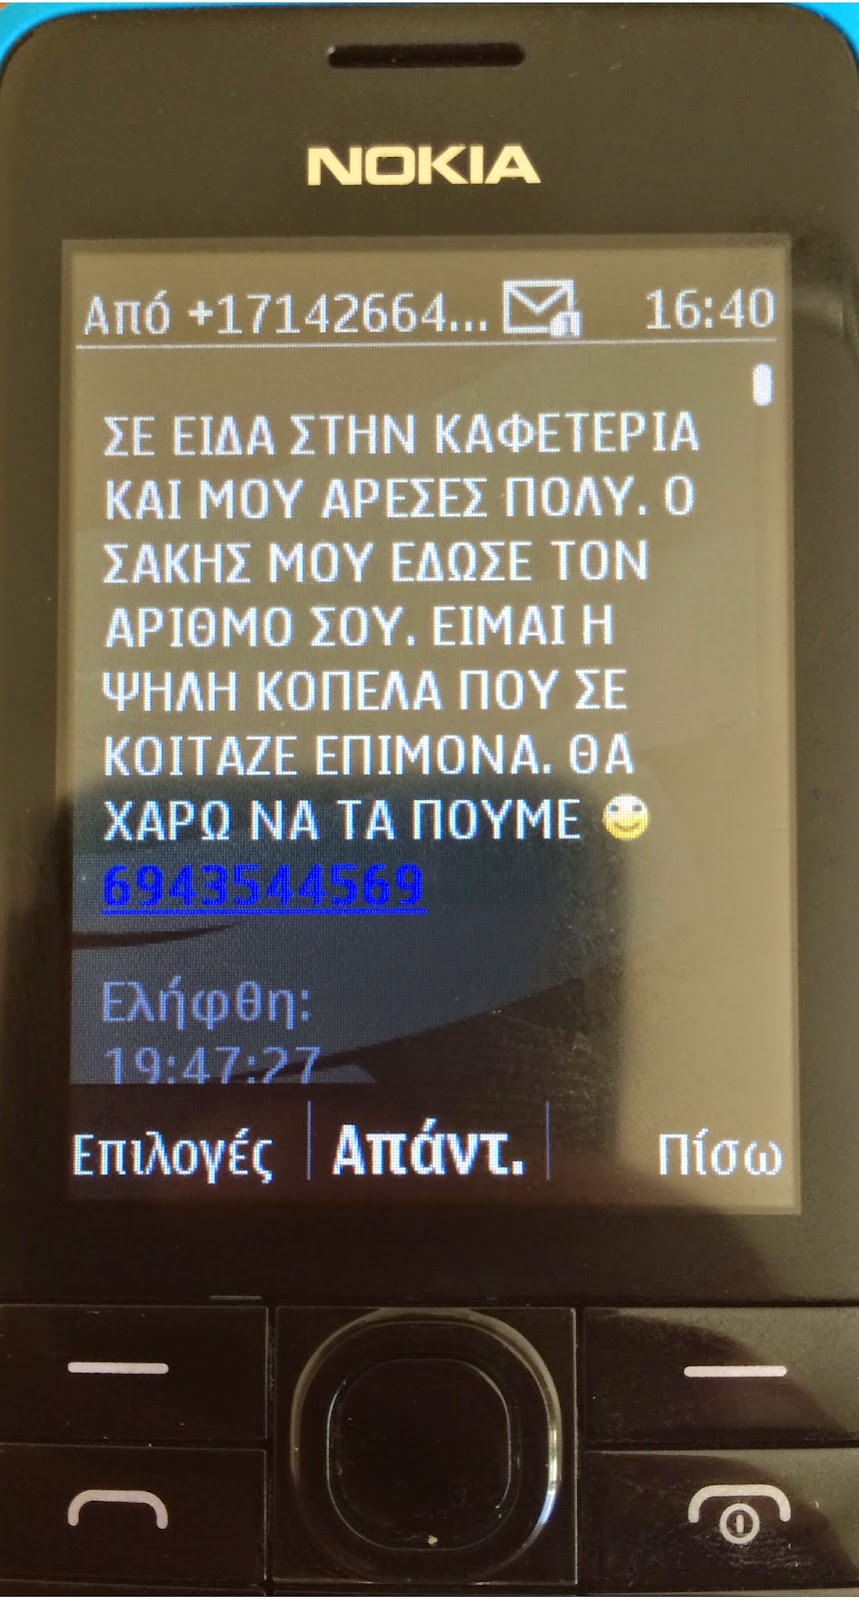 ΠΡΟΣΟΧΗ σε SMS -Spam που κυκλοφορεί! [photo] - Φωτογραφία 2